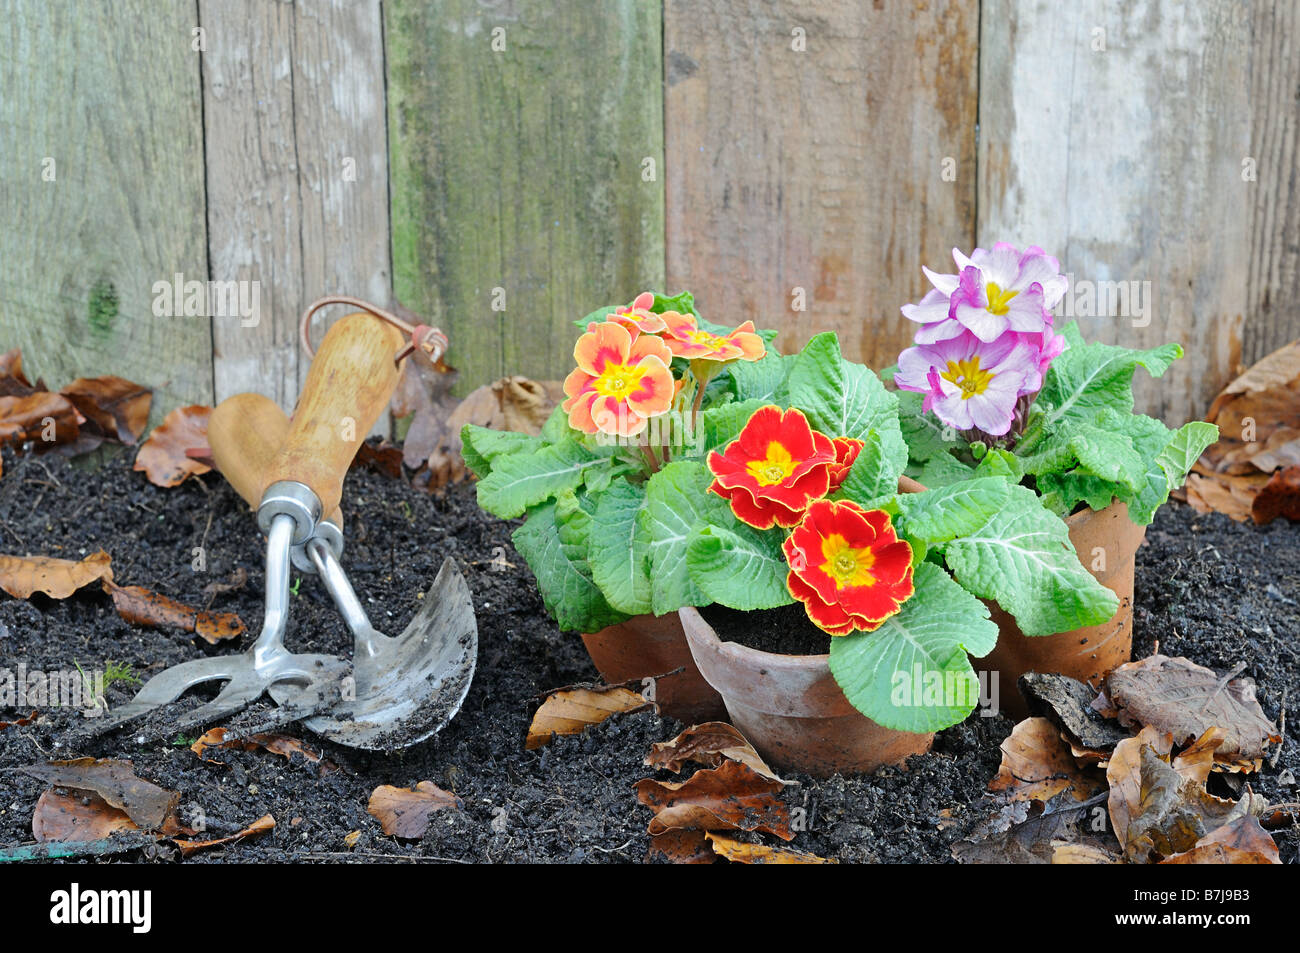 Rústico jardín primaveral escena con prímulas macetas de terracota y herramientas de jardinería Foto de stock